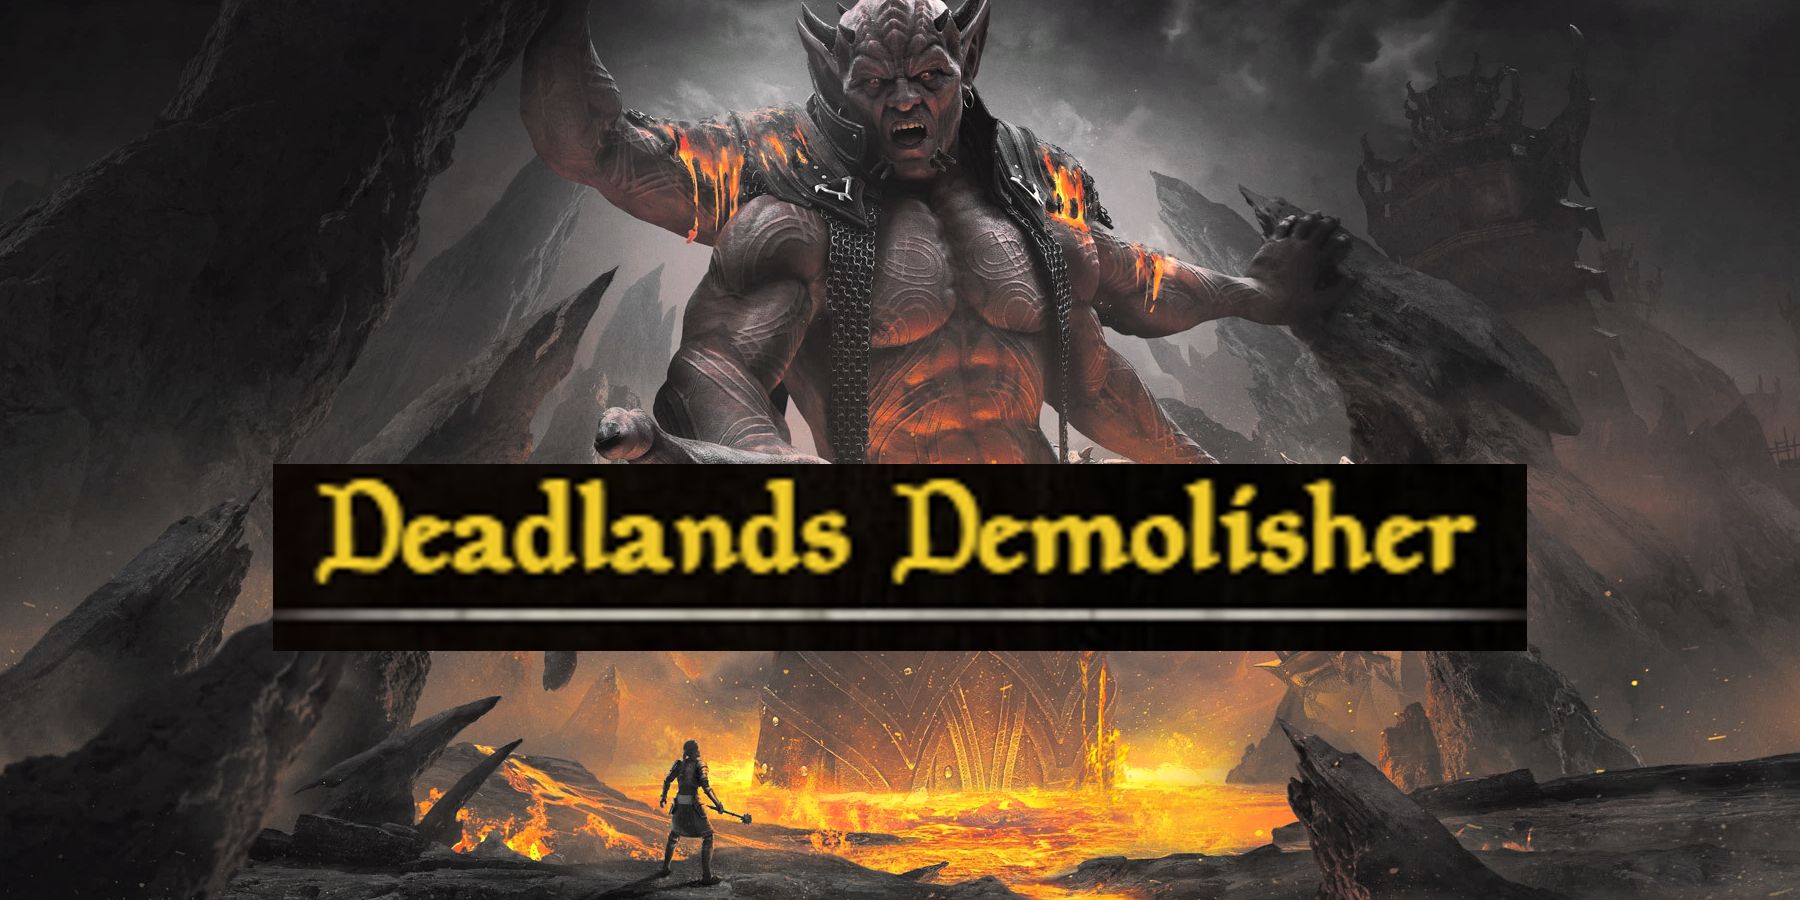 ESO Deadlands Deadlands Demolisher Armor Set Guide